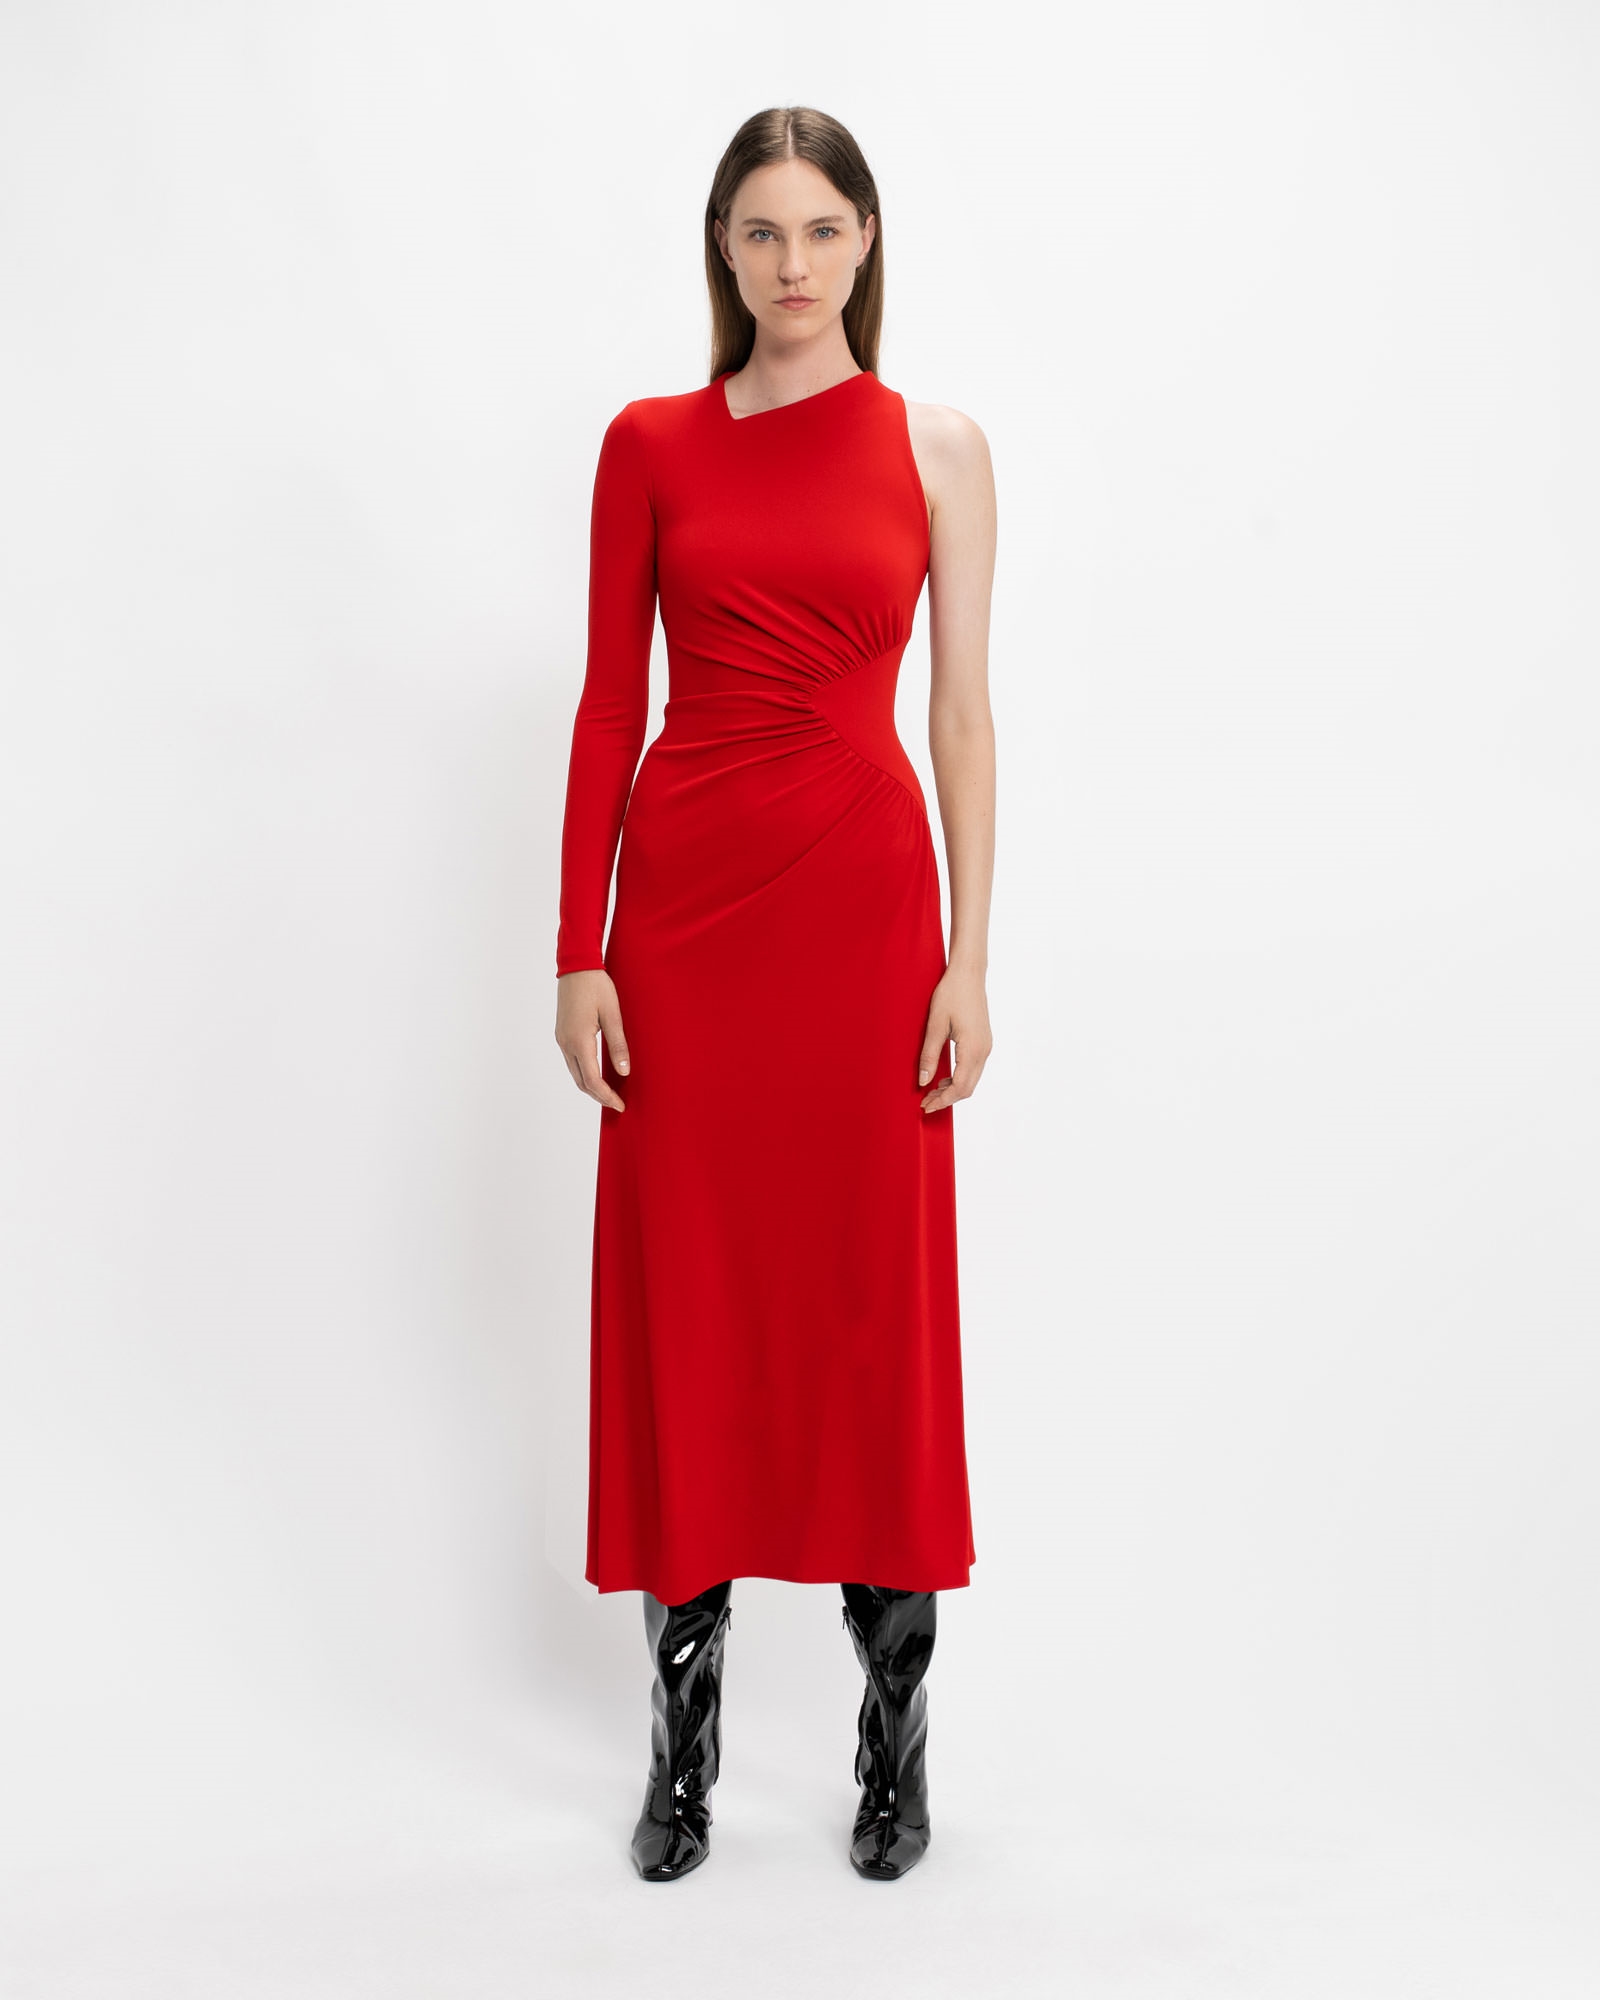 Scarlet One Shoulder Dress | Buy Dresses Online - Cue